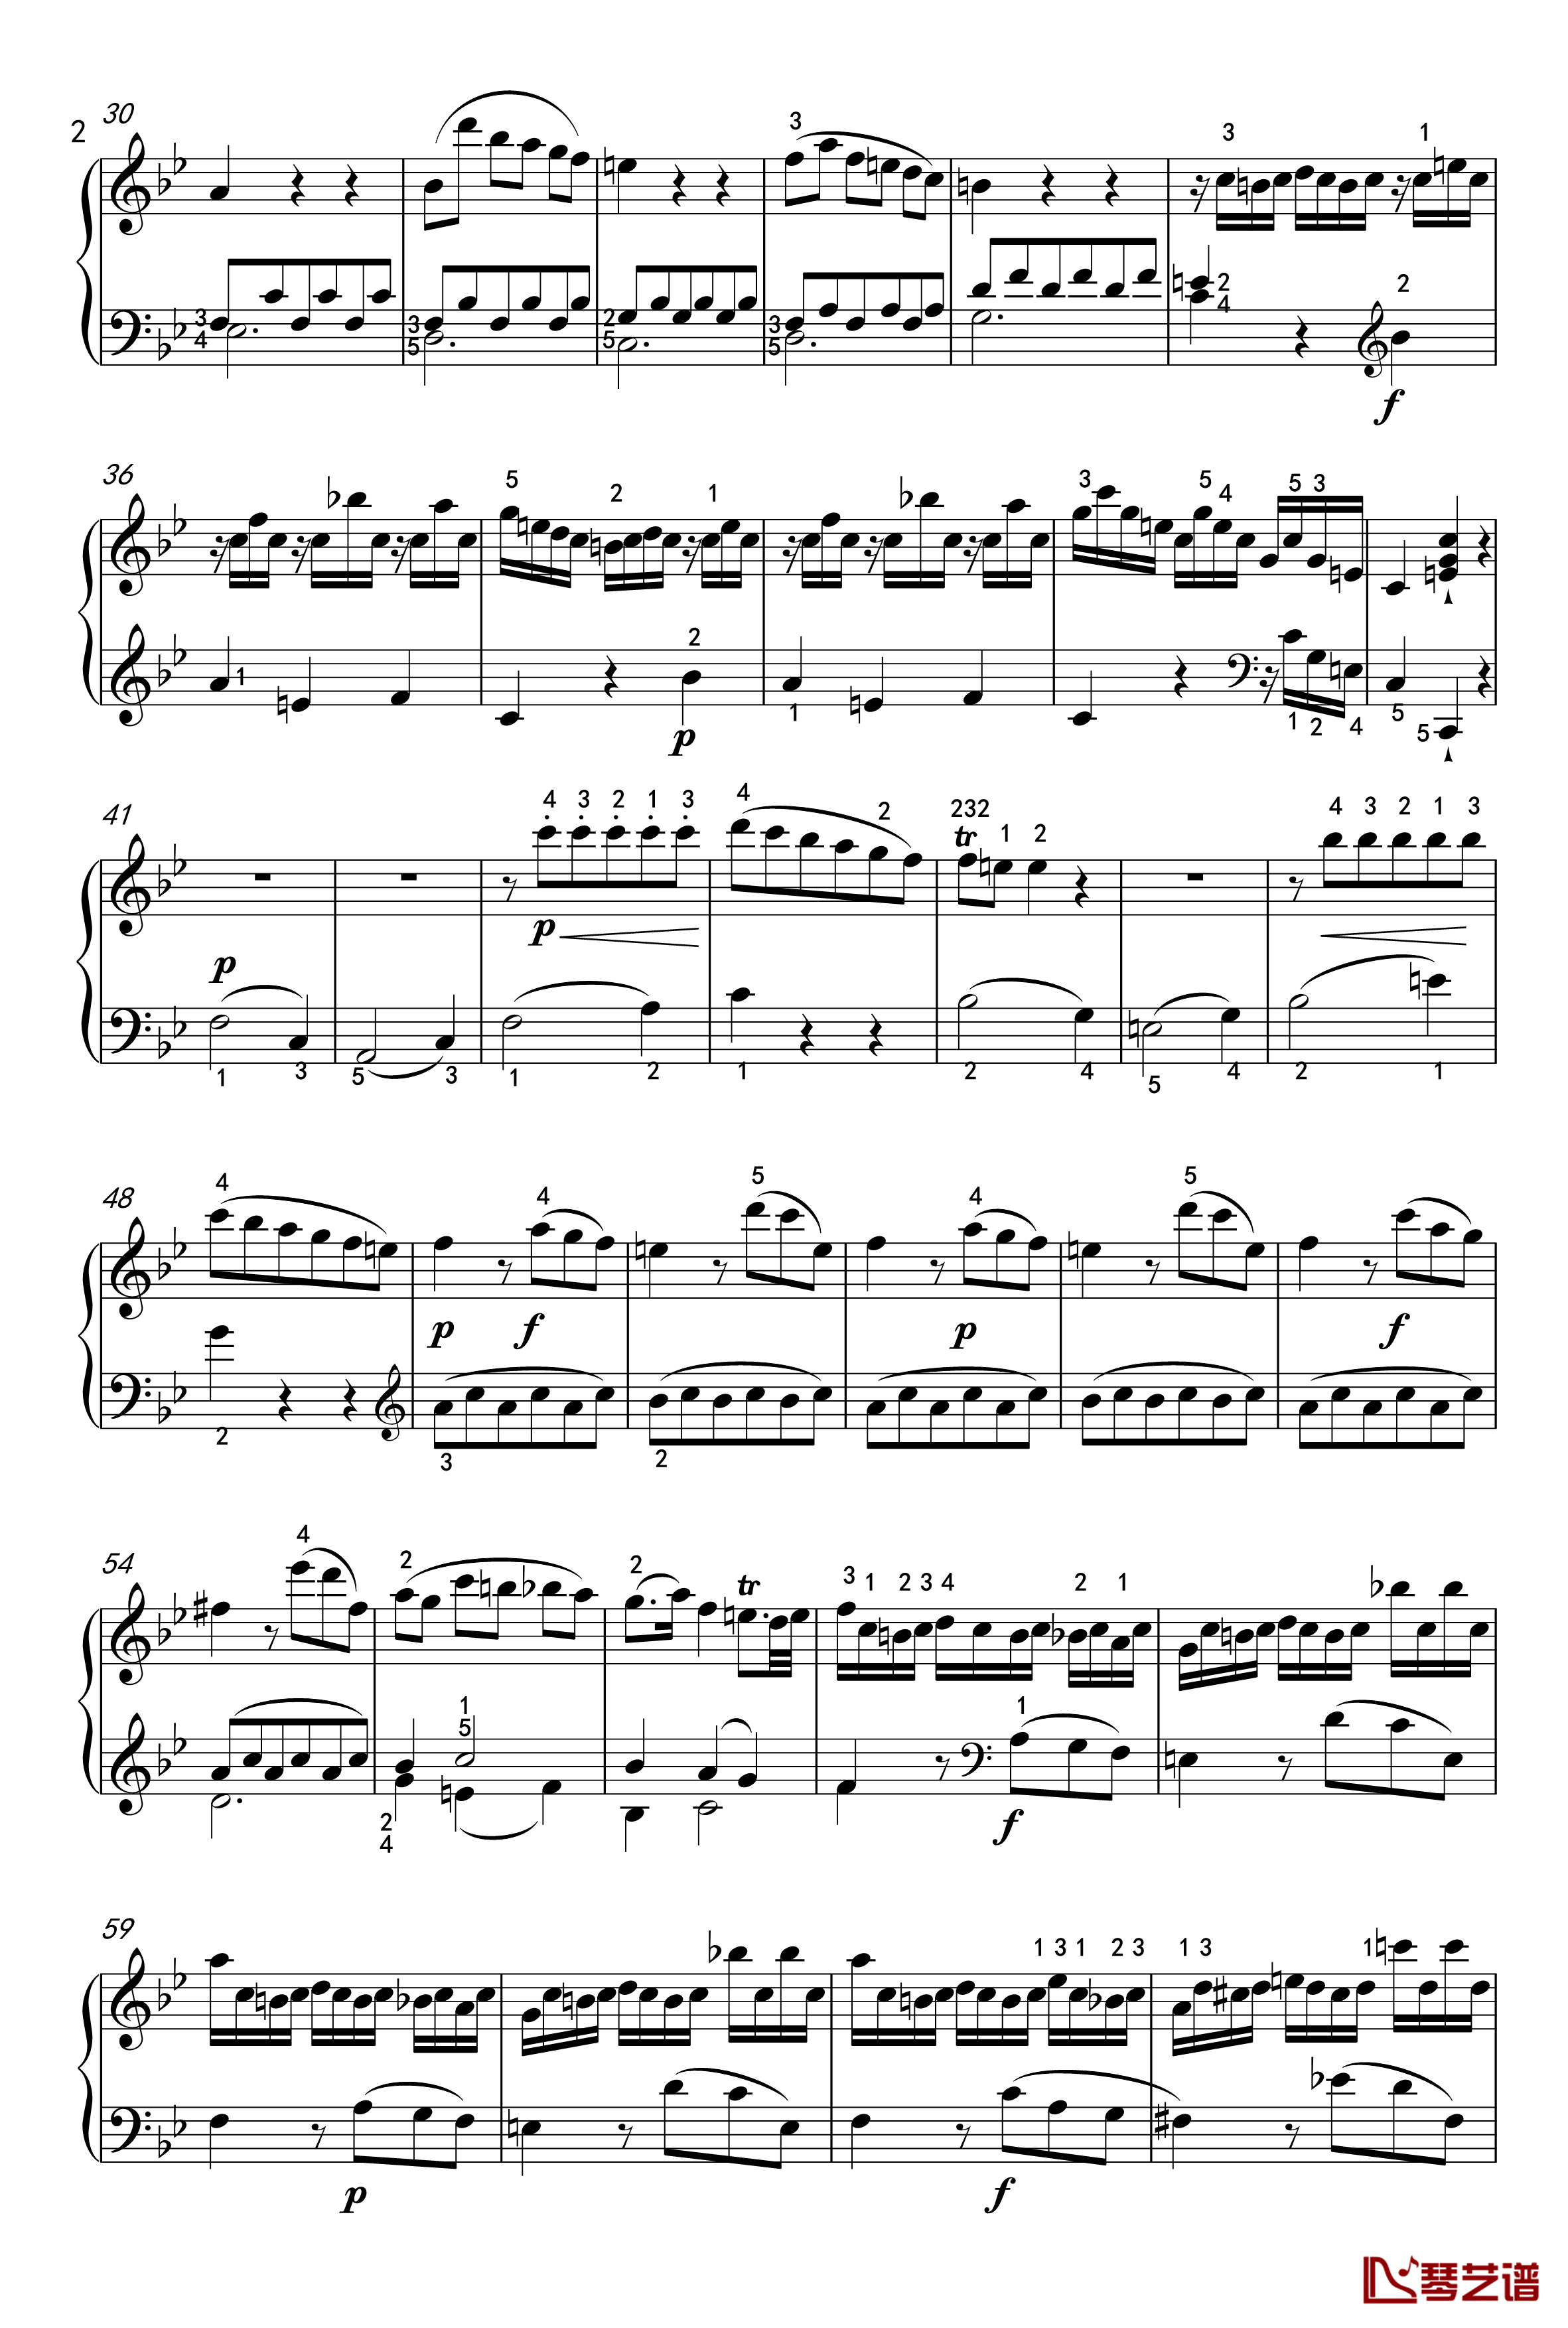 奏鸣曲钢琴谱-K-570-第一乐章-莫扎特2